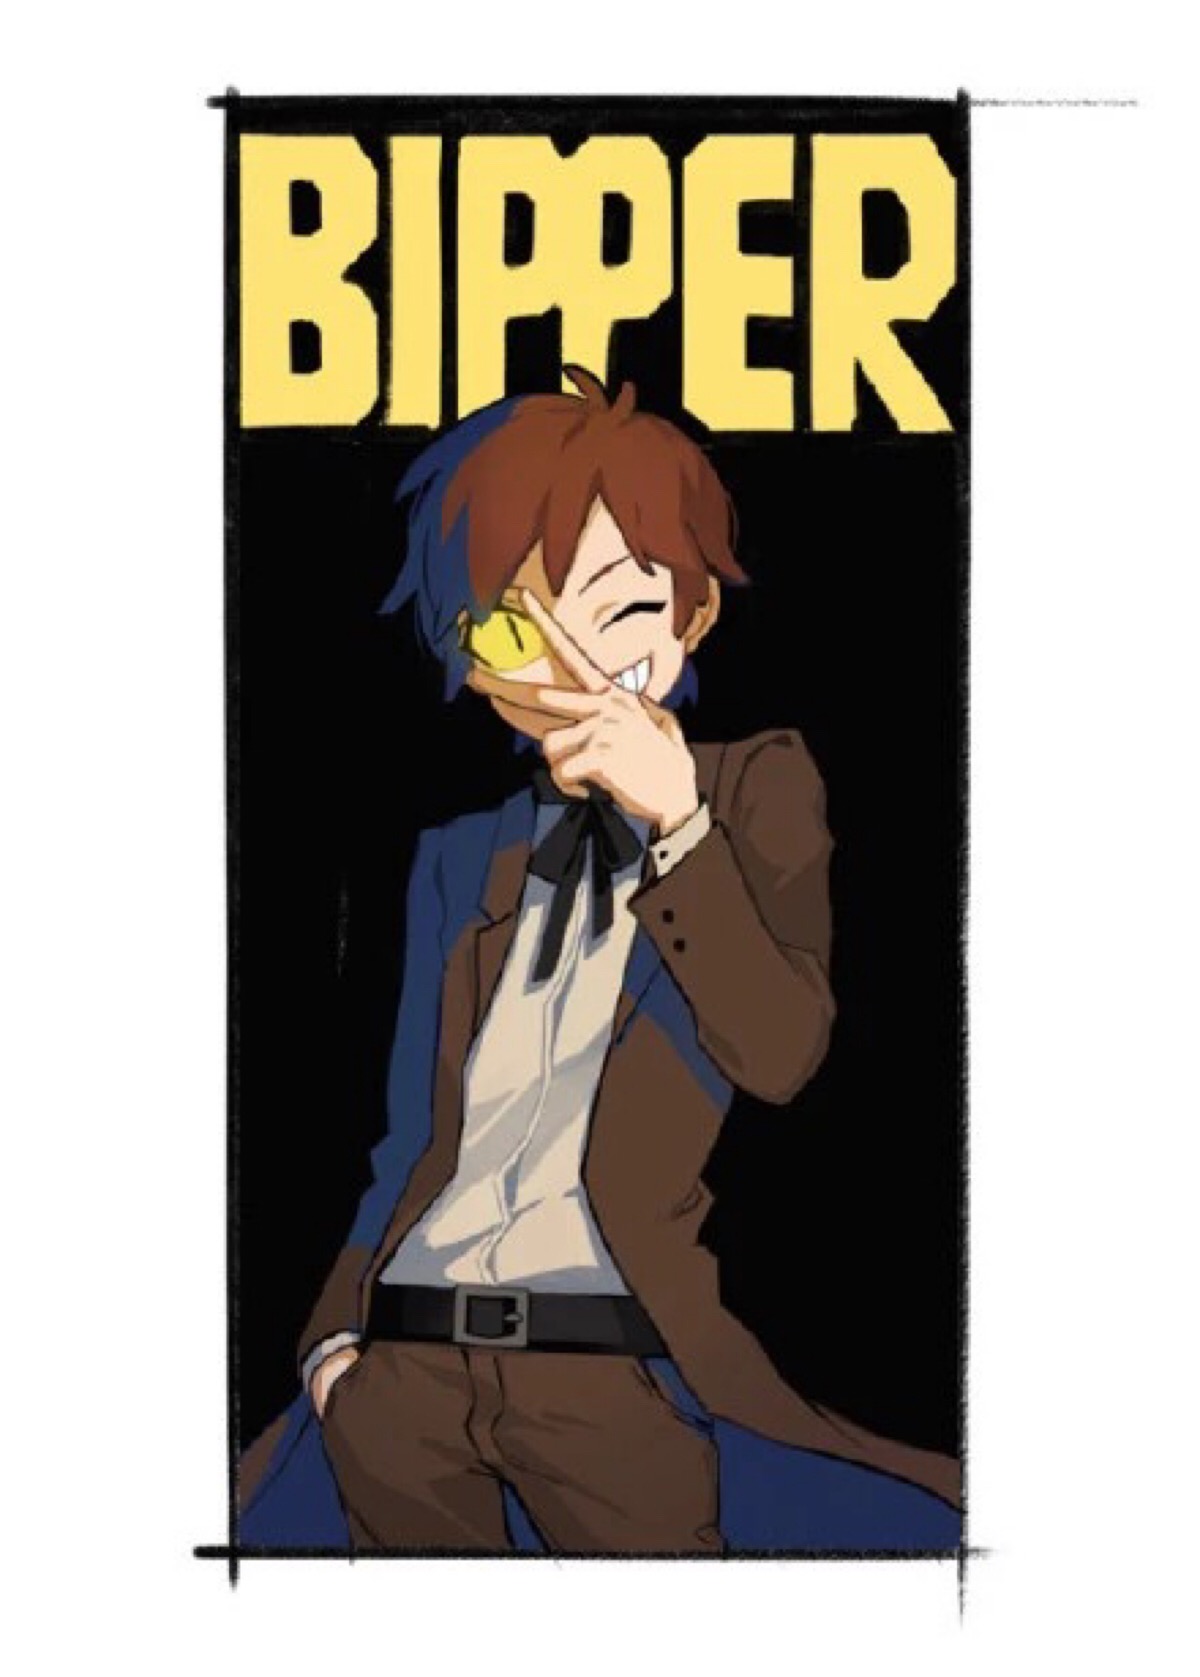 怪诞小镇 dipper bill bipper